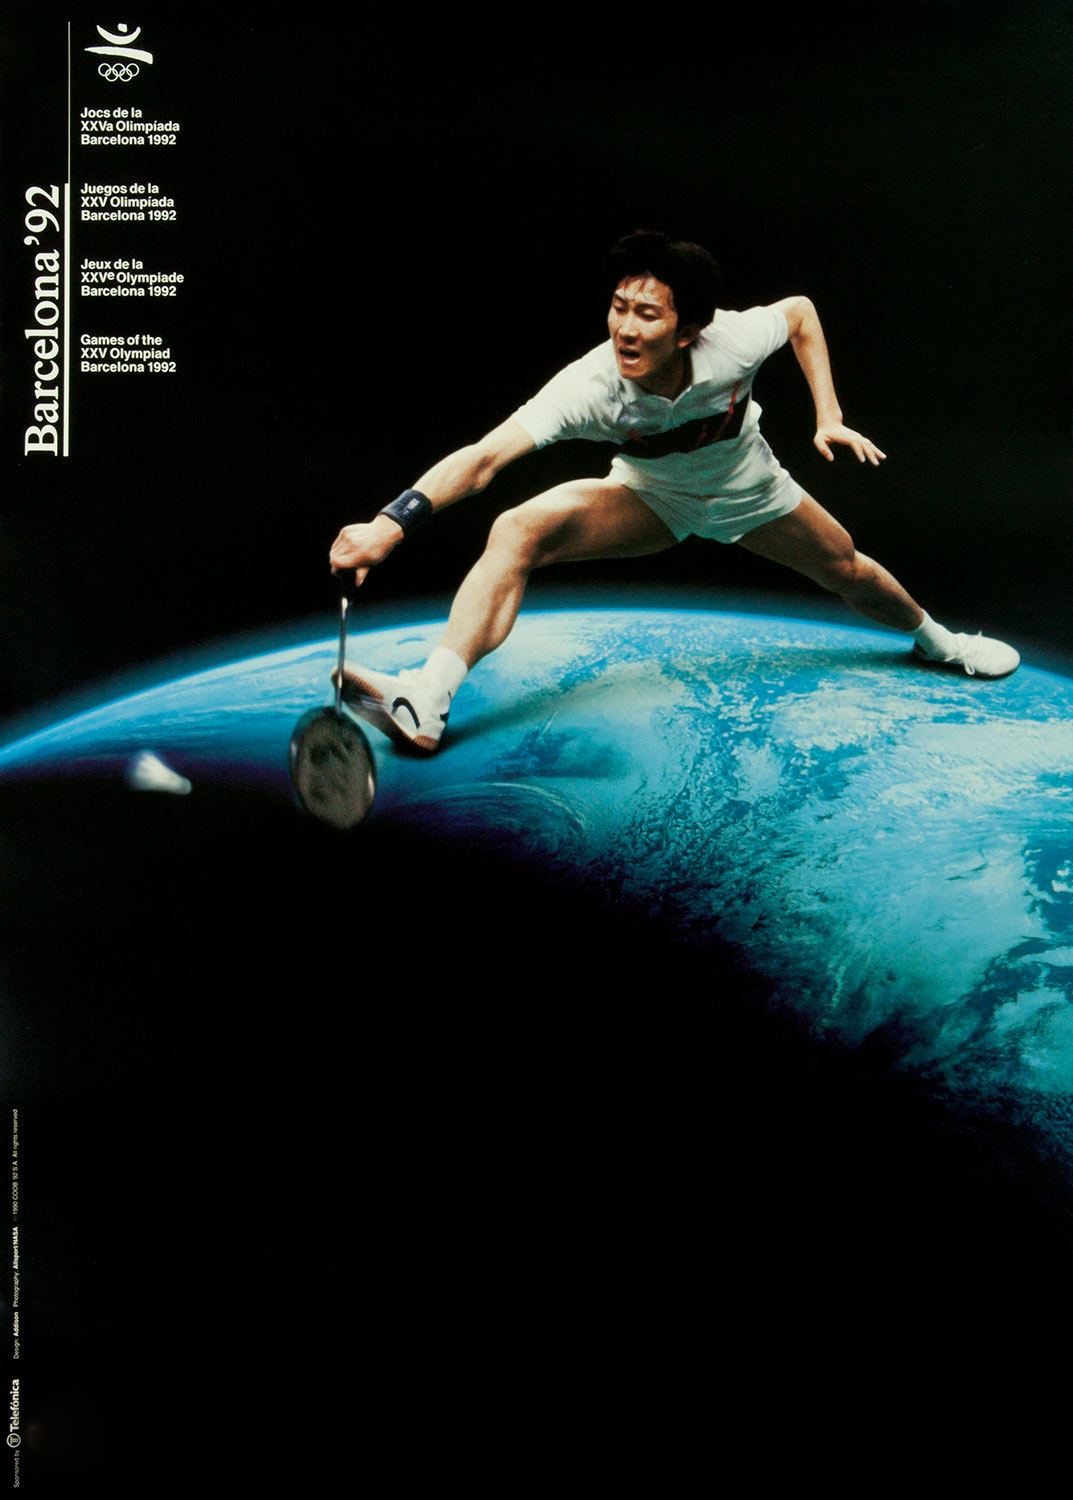 Plakat mit Abbildung eines Badmintonspielers. Im Hintergrund der Planet Erde